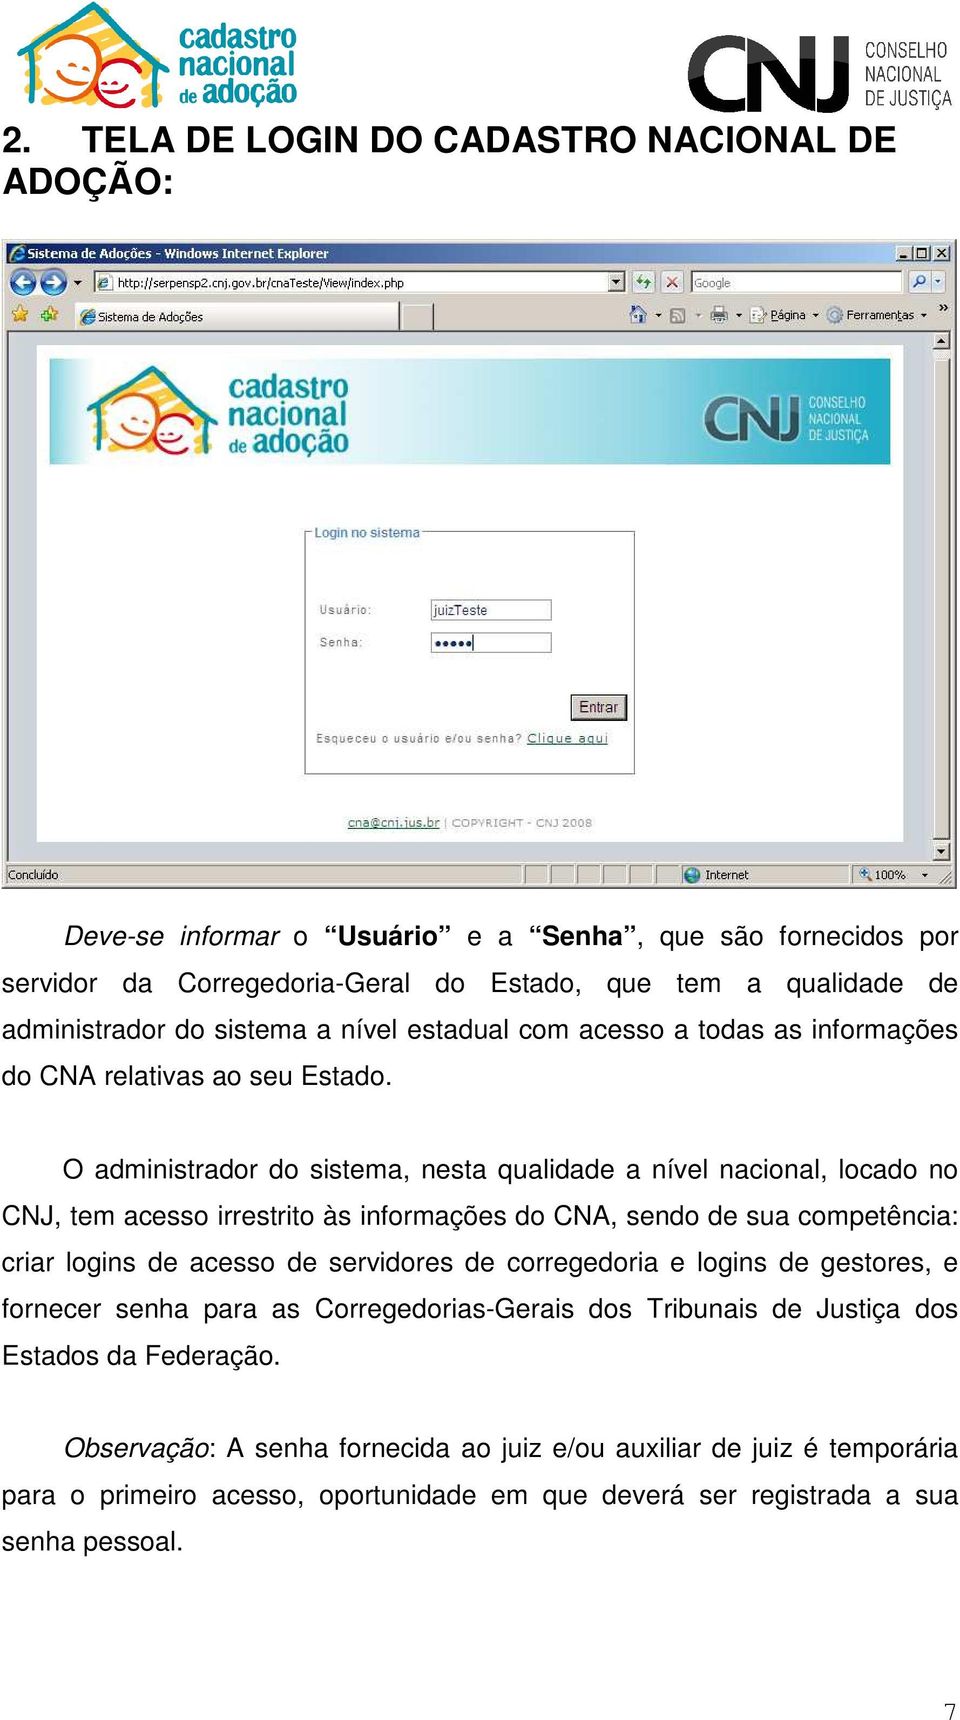 O administrador do sistema, nesta qualidade a nível nacional, locado no CNJ, tem acesso irrestrito às informações do CNA, sendo de sua competência: criar logins de acesso de servidores de